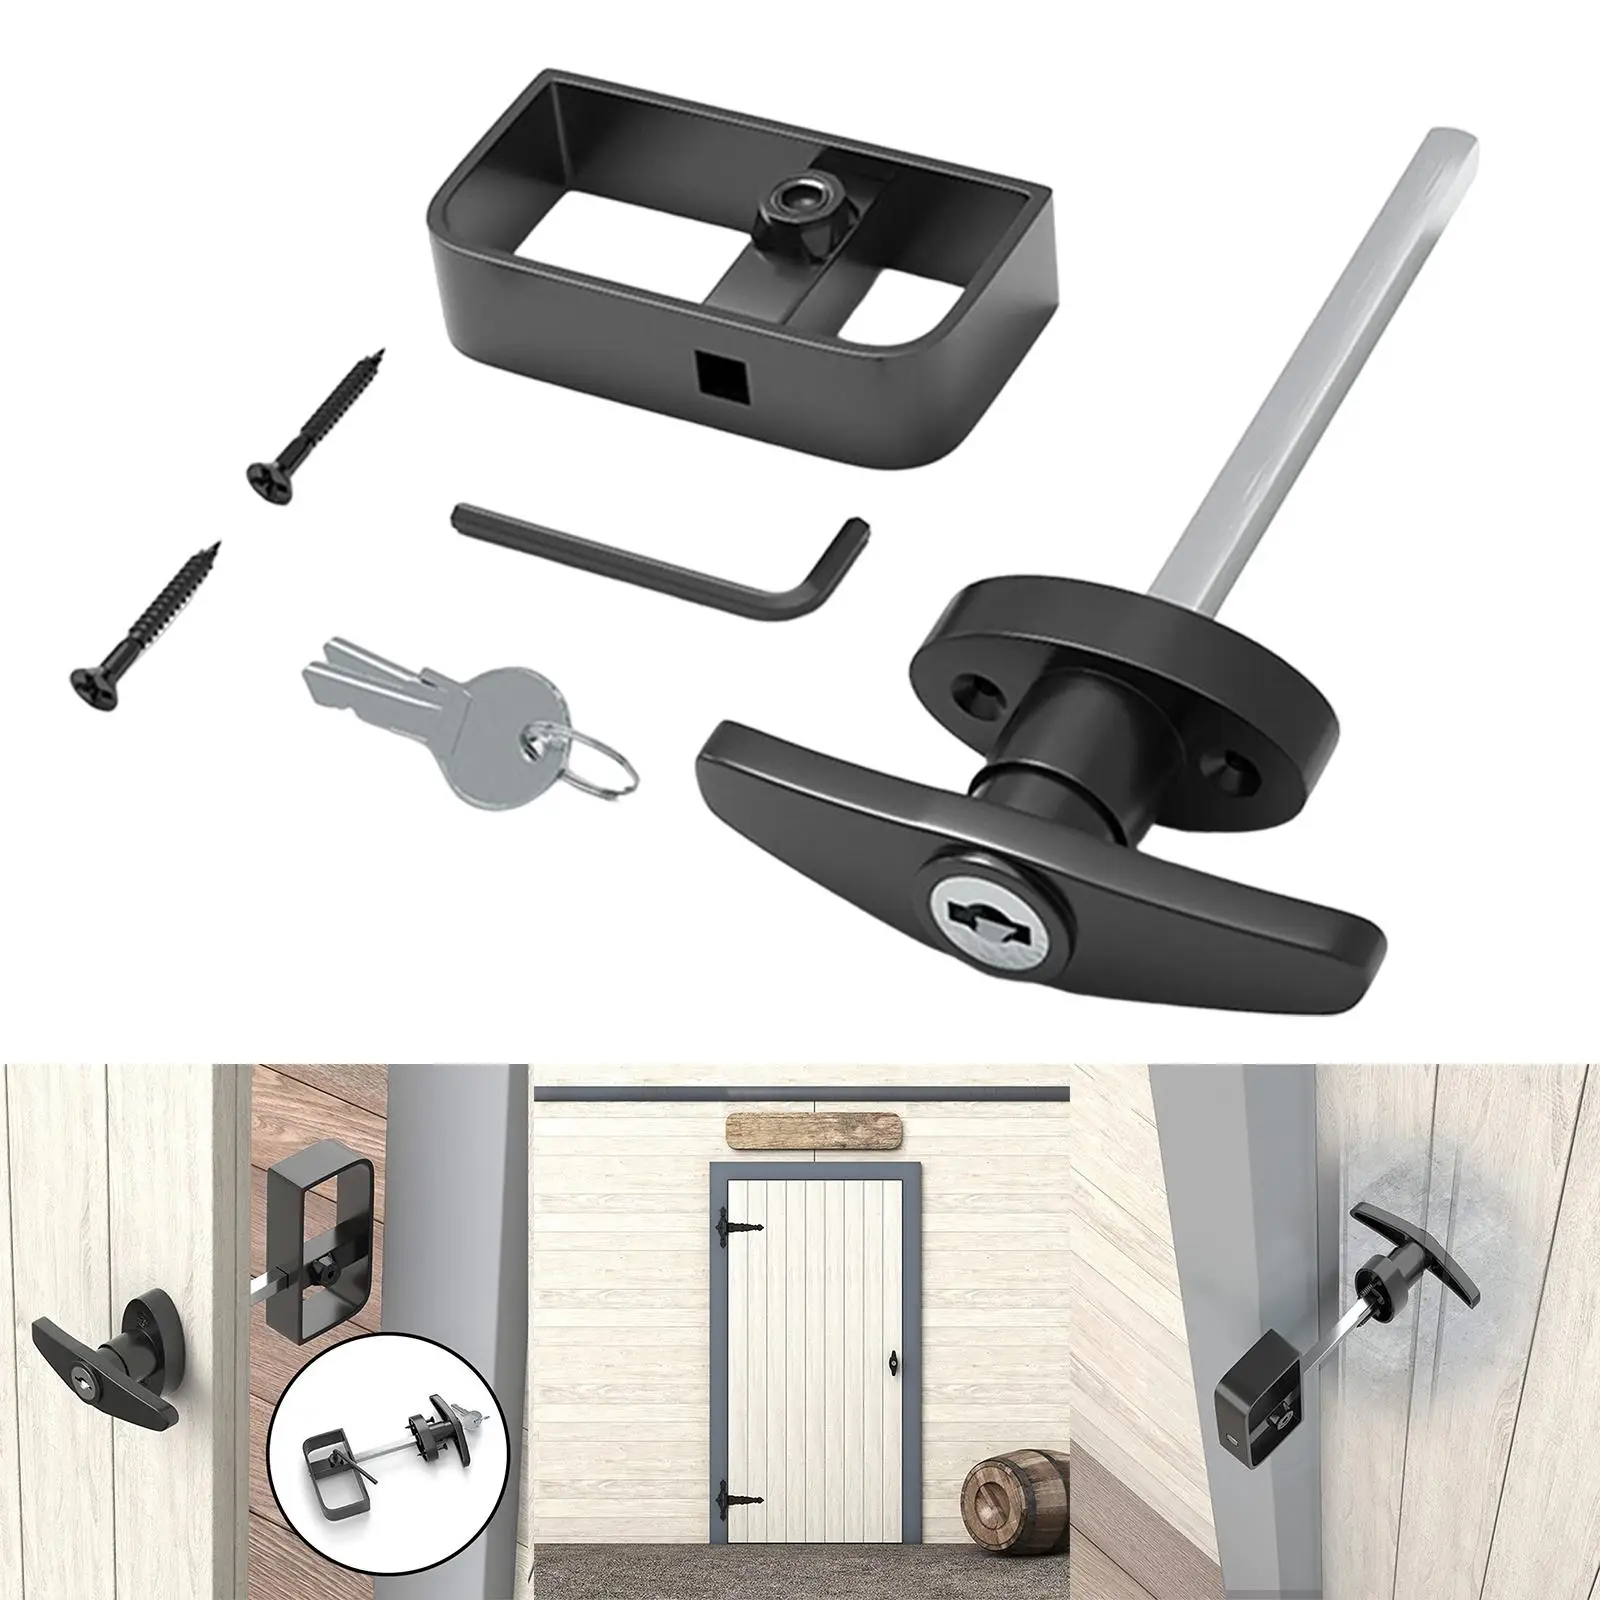 T Handle Lock with Two Keys Electric Cabinet Lock Replacement Hardware for Caravan Garage Barn Door Truck Accessories